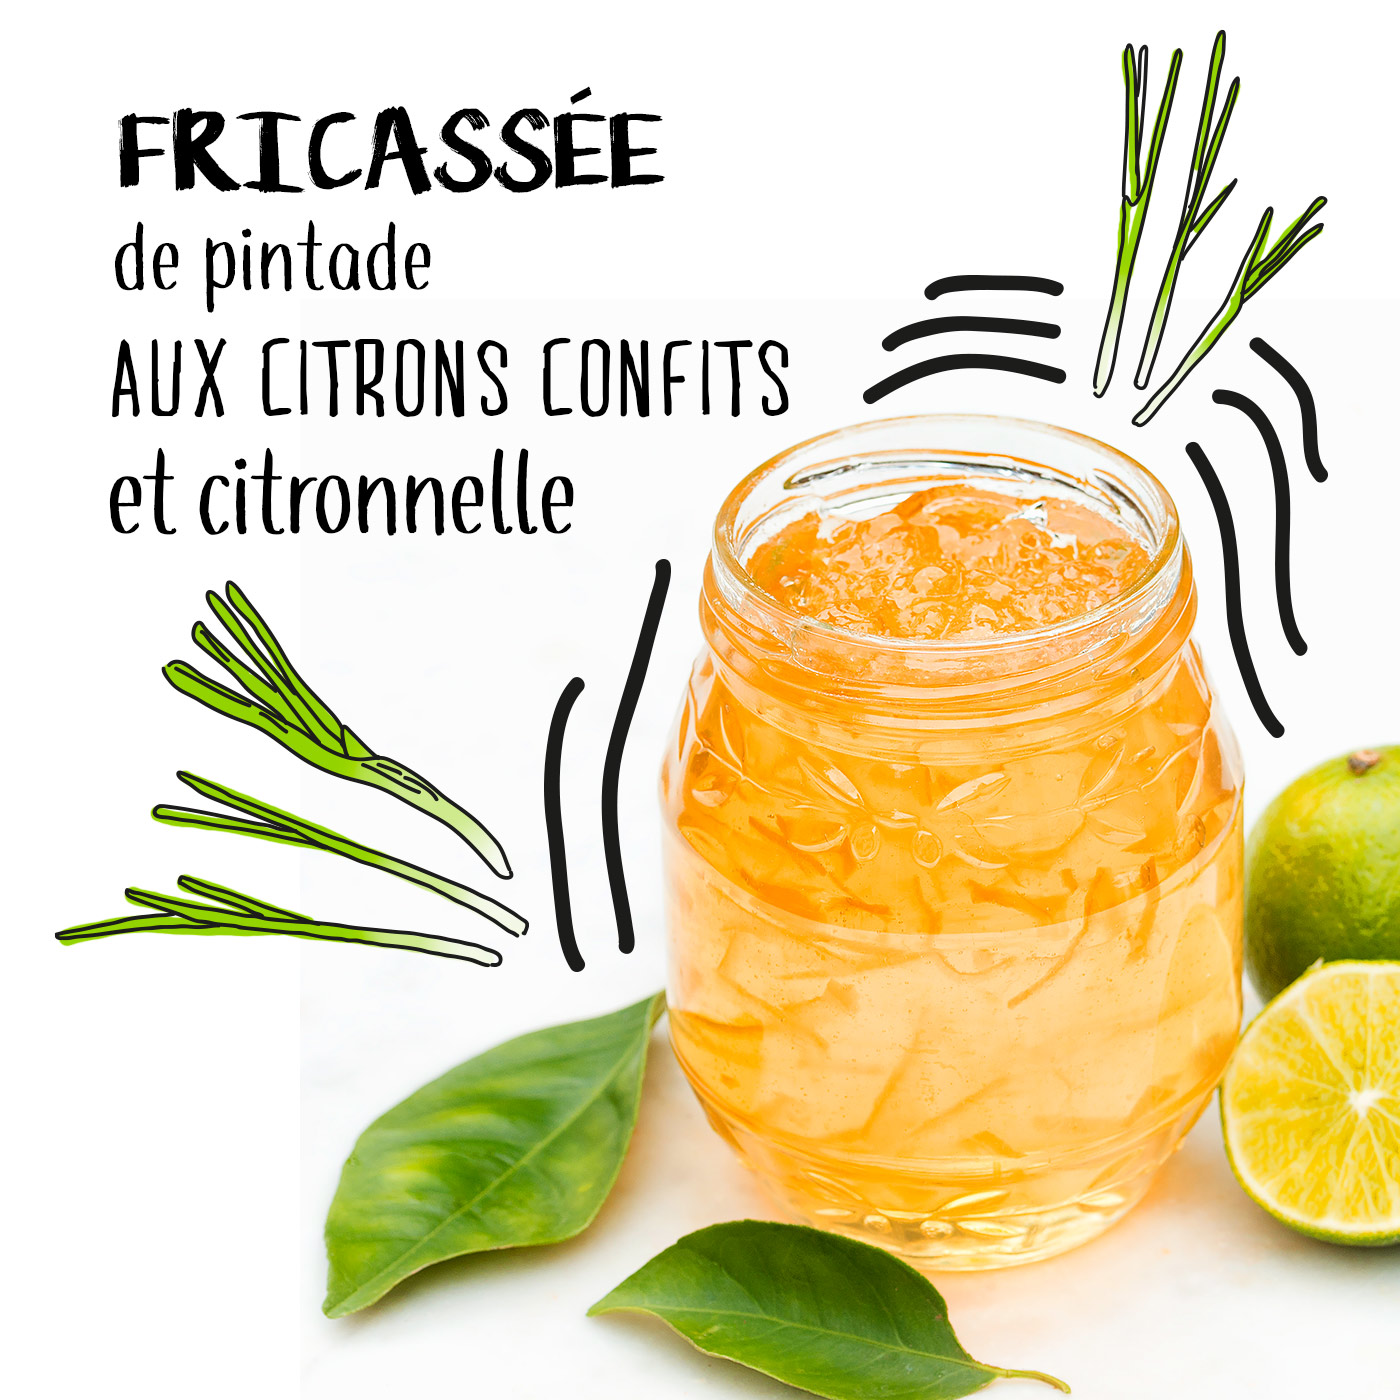 fricassee-de-depintade-aux-citrons-confits